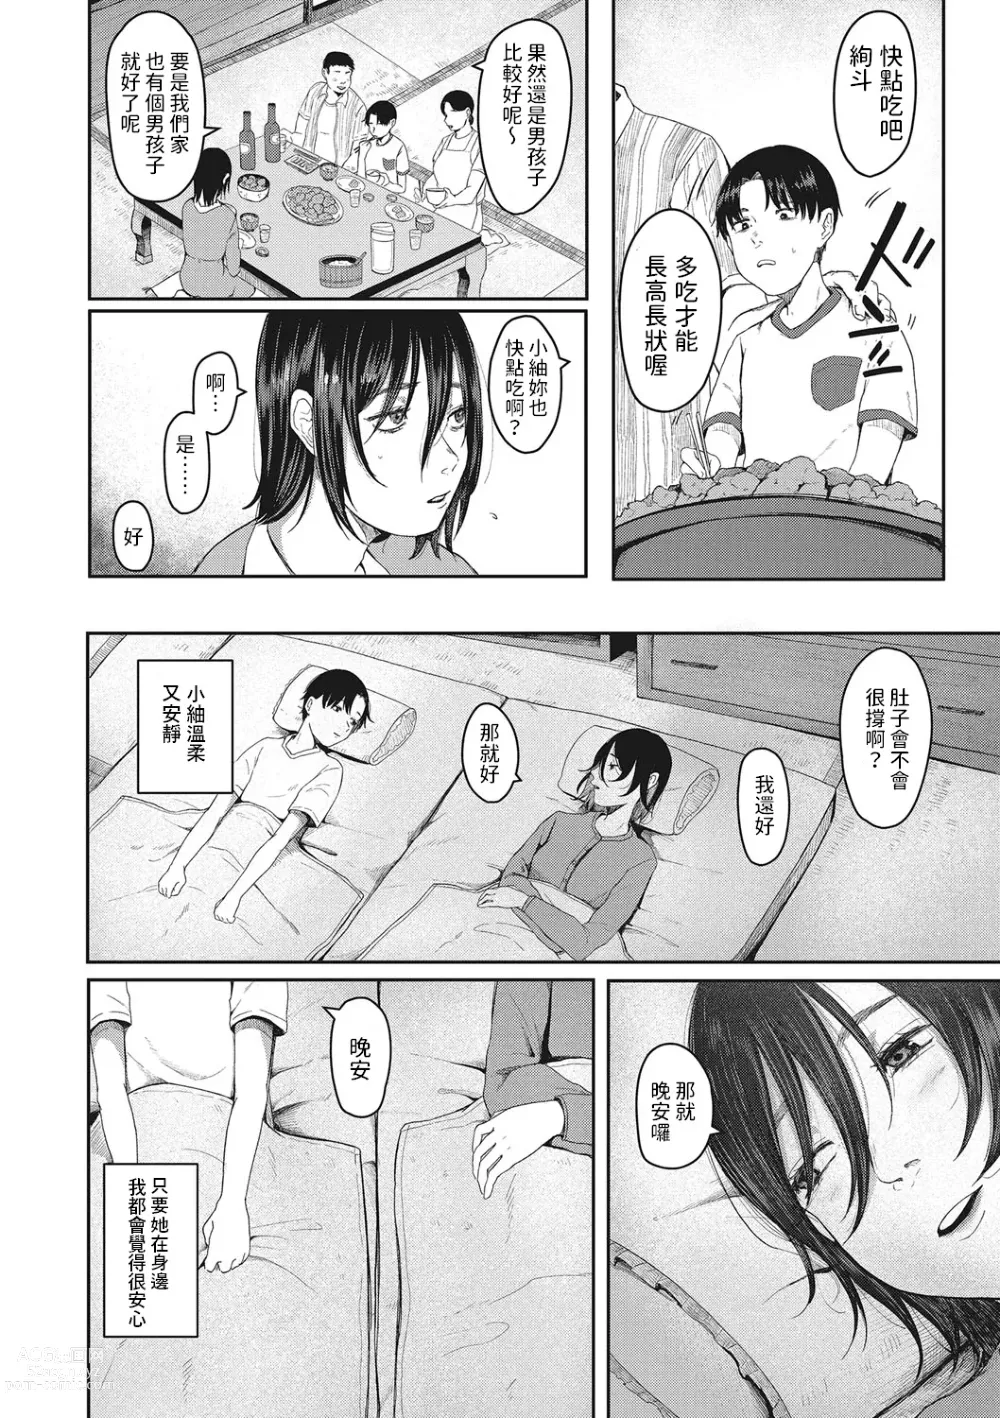 Page 4 of manga Tsuisou no Aza